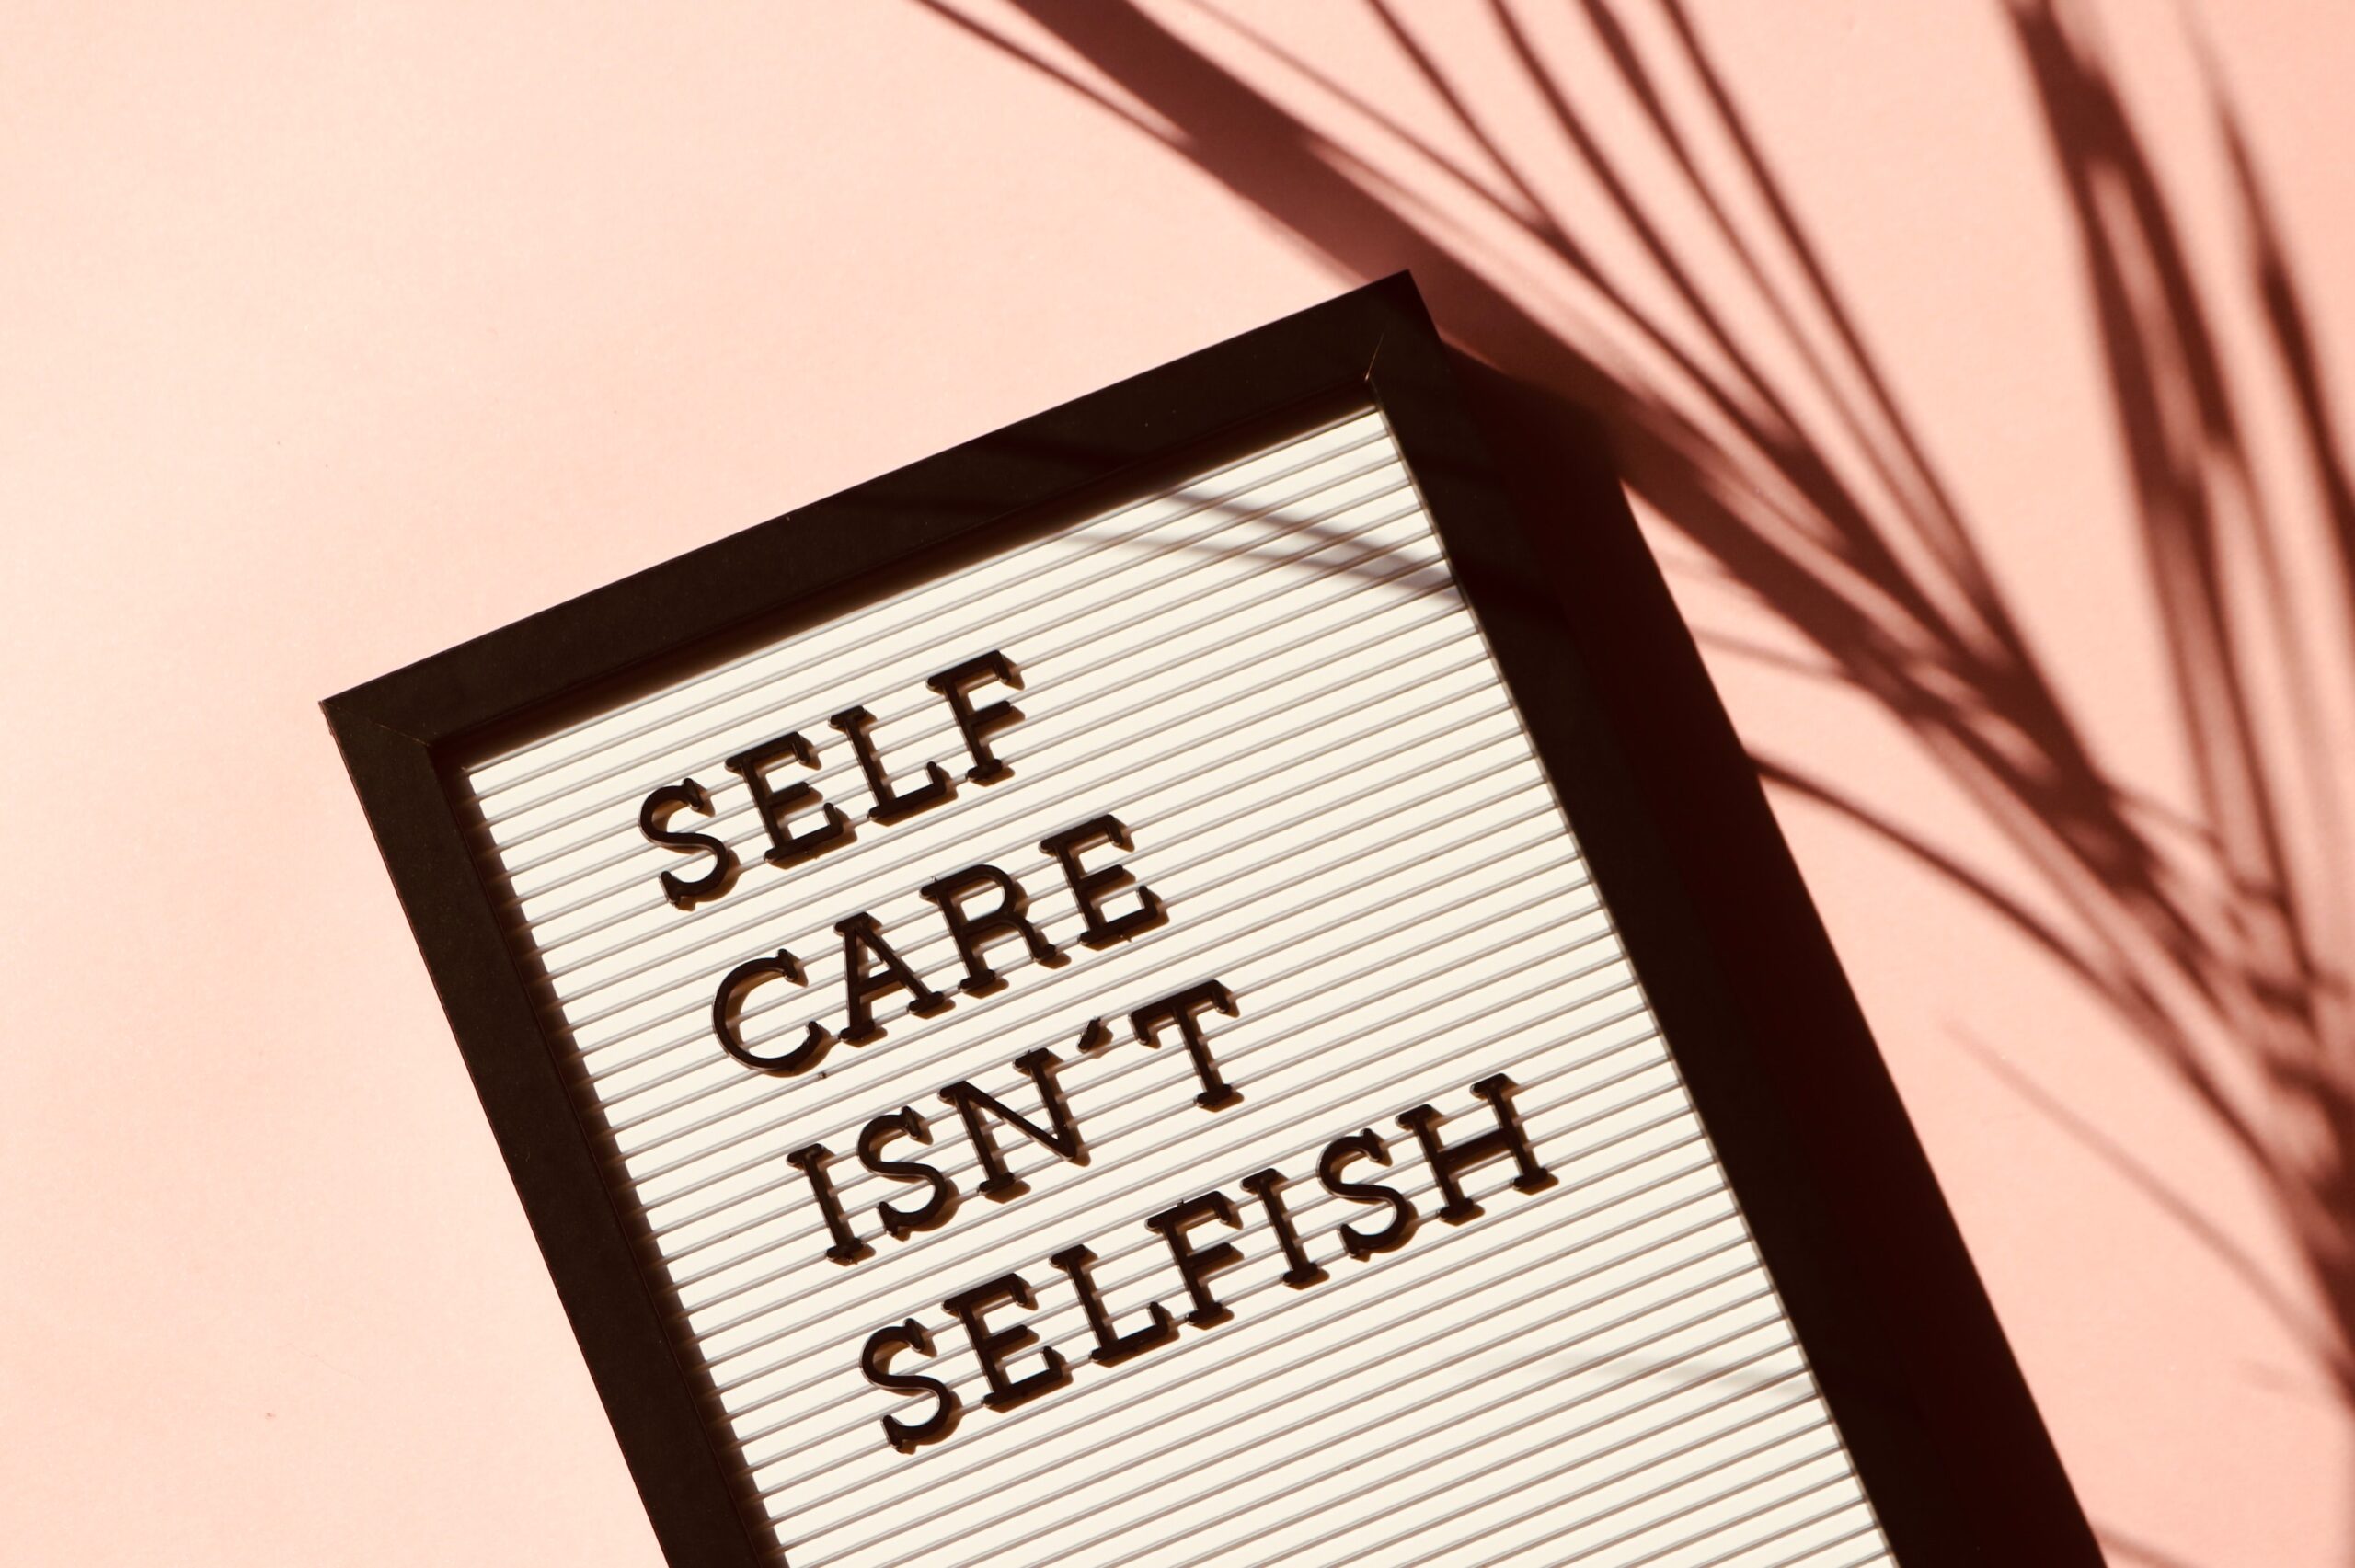 Image of whiteboard "self care isn't selfish"